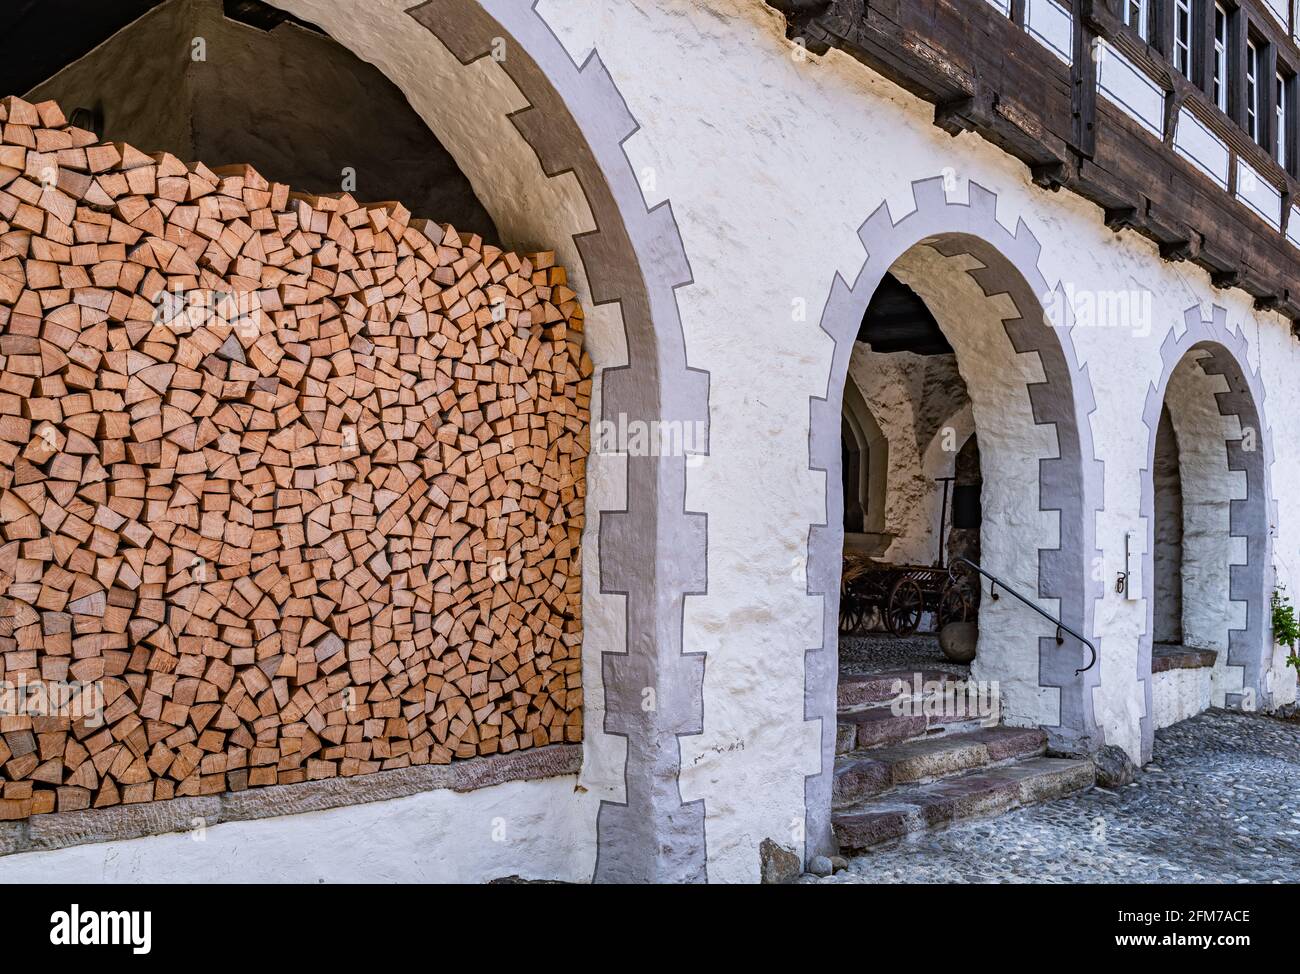 Ein Stapel Brennholz unter dem Bogen des traditionellen mittelalterlichen Hauses Werdenberg, Schweiz Stockfoto